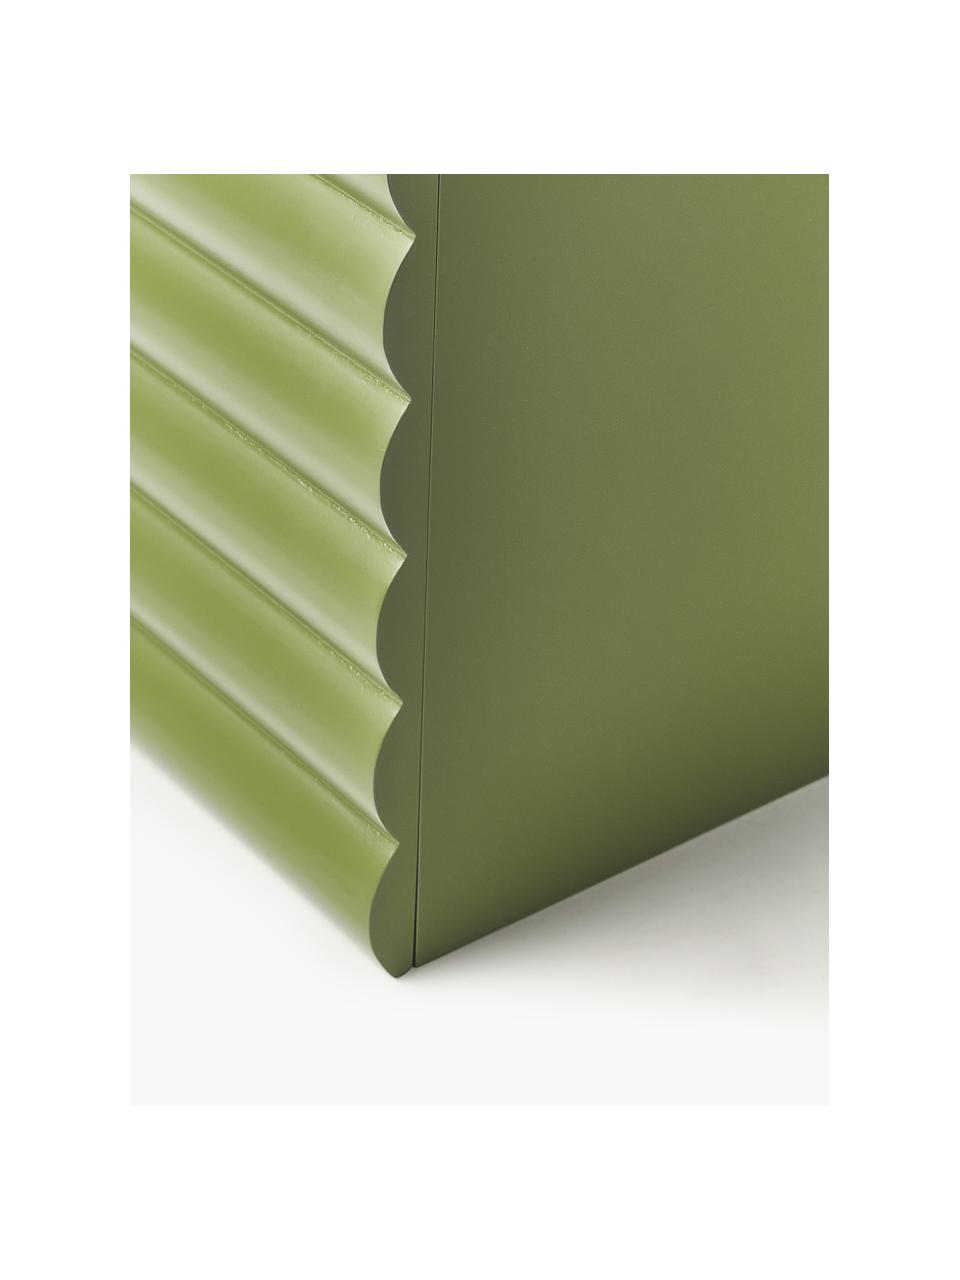 Scatola Ina, Pannello di fibra a media densità (MDF) certificato FSC (Forest Stewardship Council), Verde scuro, Larg. 32 x Prof. 32 cm